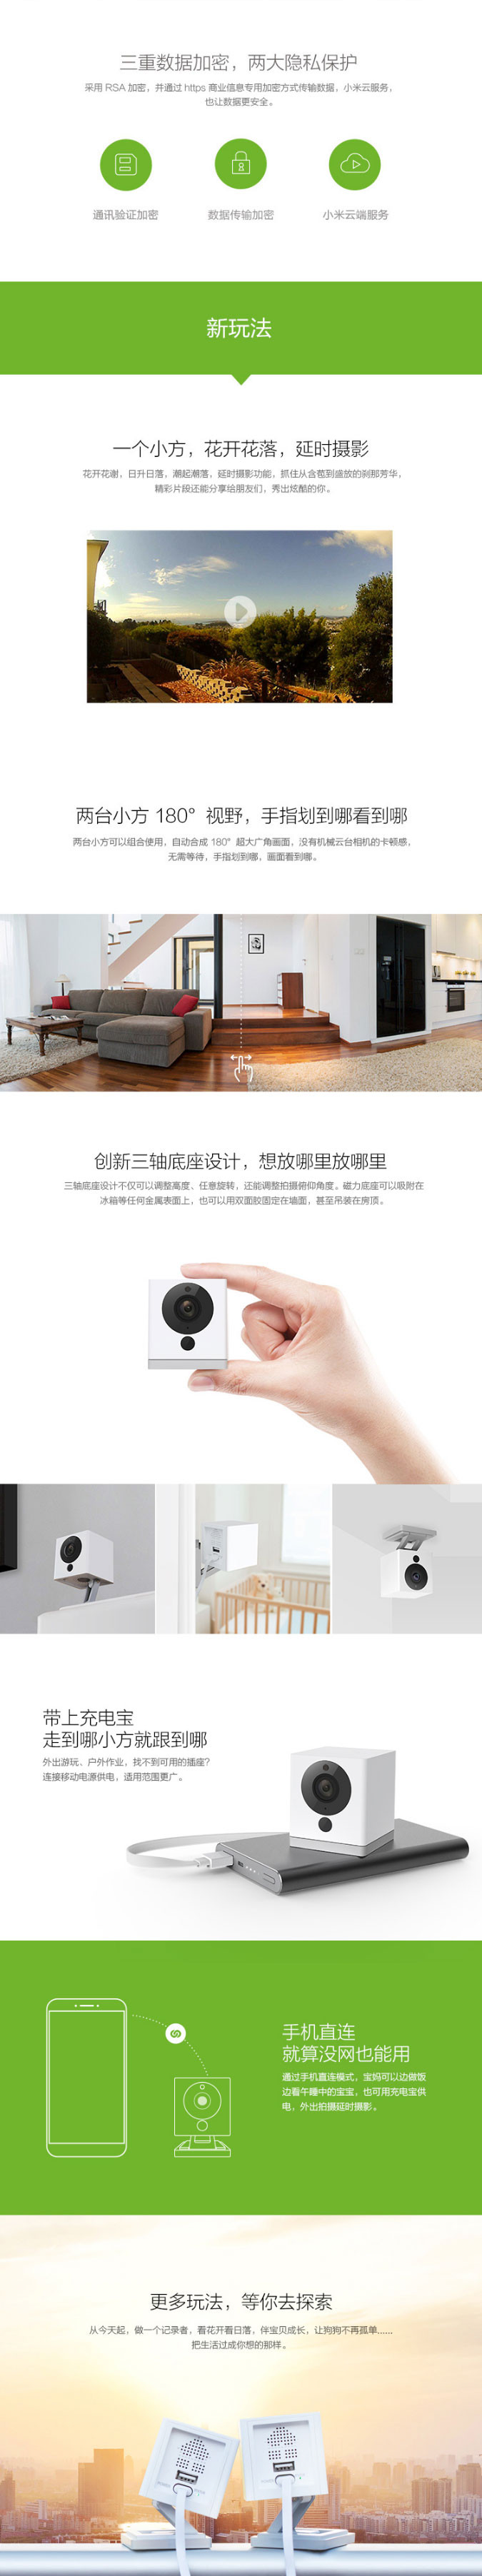 小米 小方智能摄像机 无线wifi摄像头网络家用监控摄像头高清 红外夜视1080P 智能家居